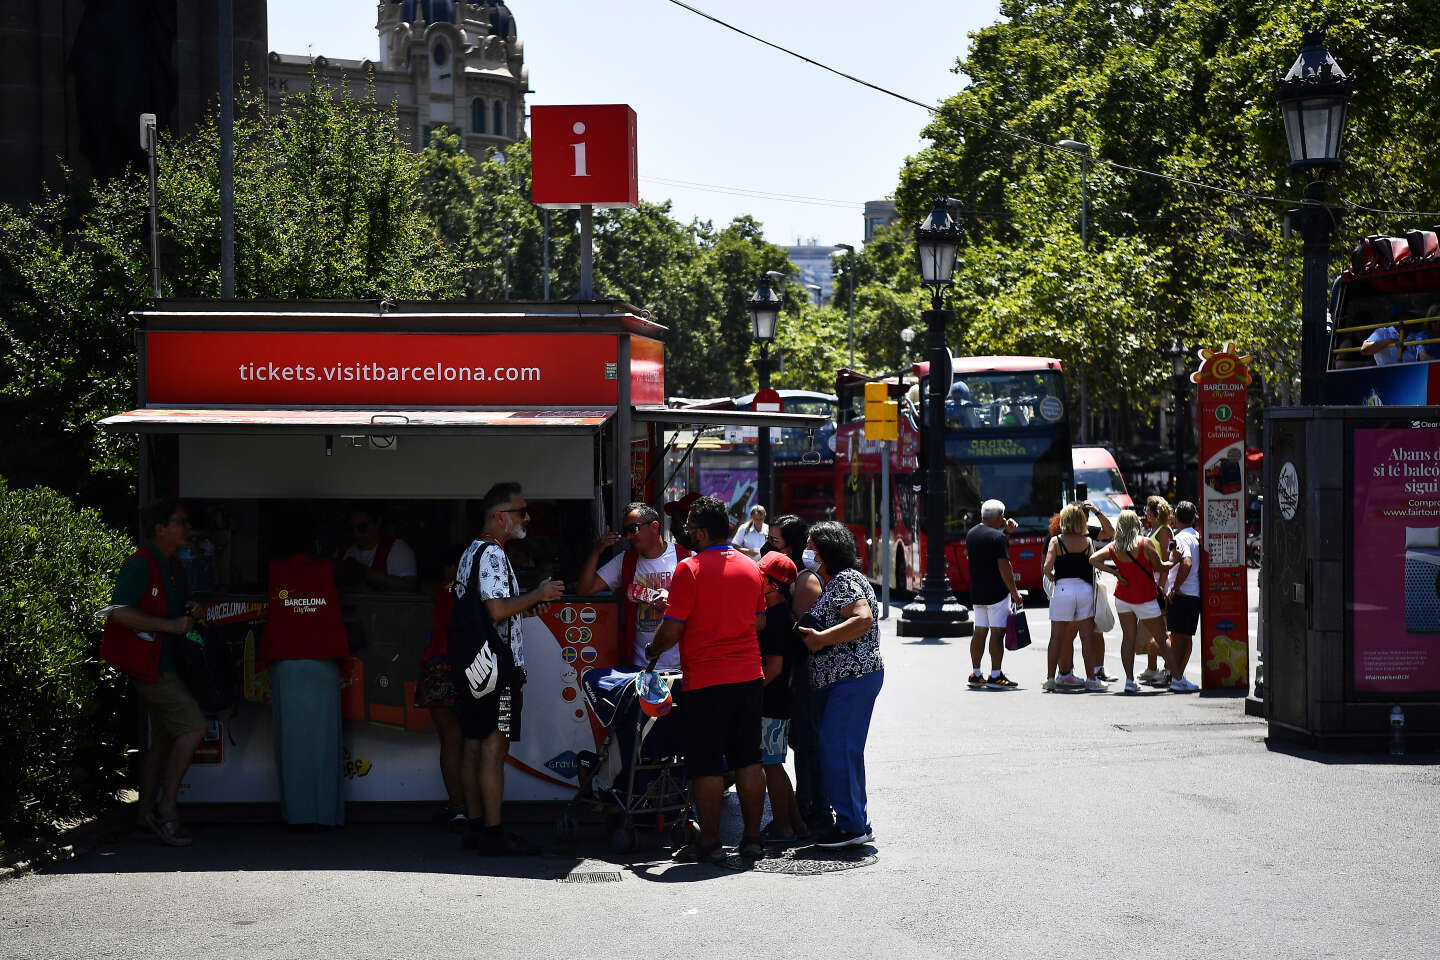 La Spagna spera di battere un nuovo record nel numero di turisti